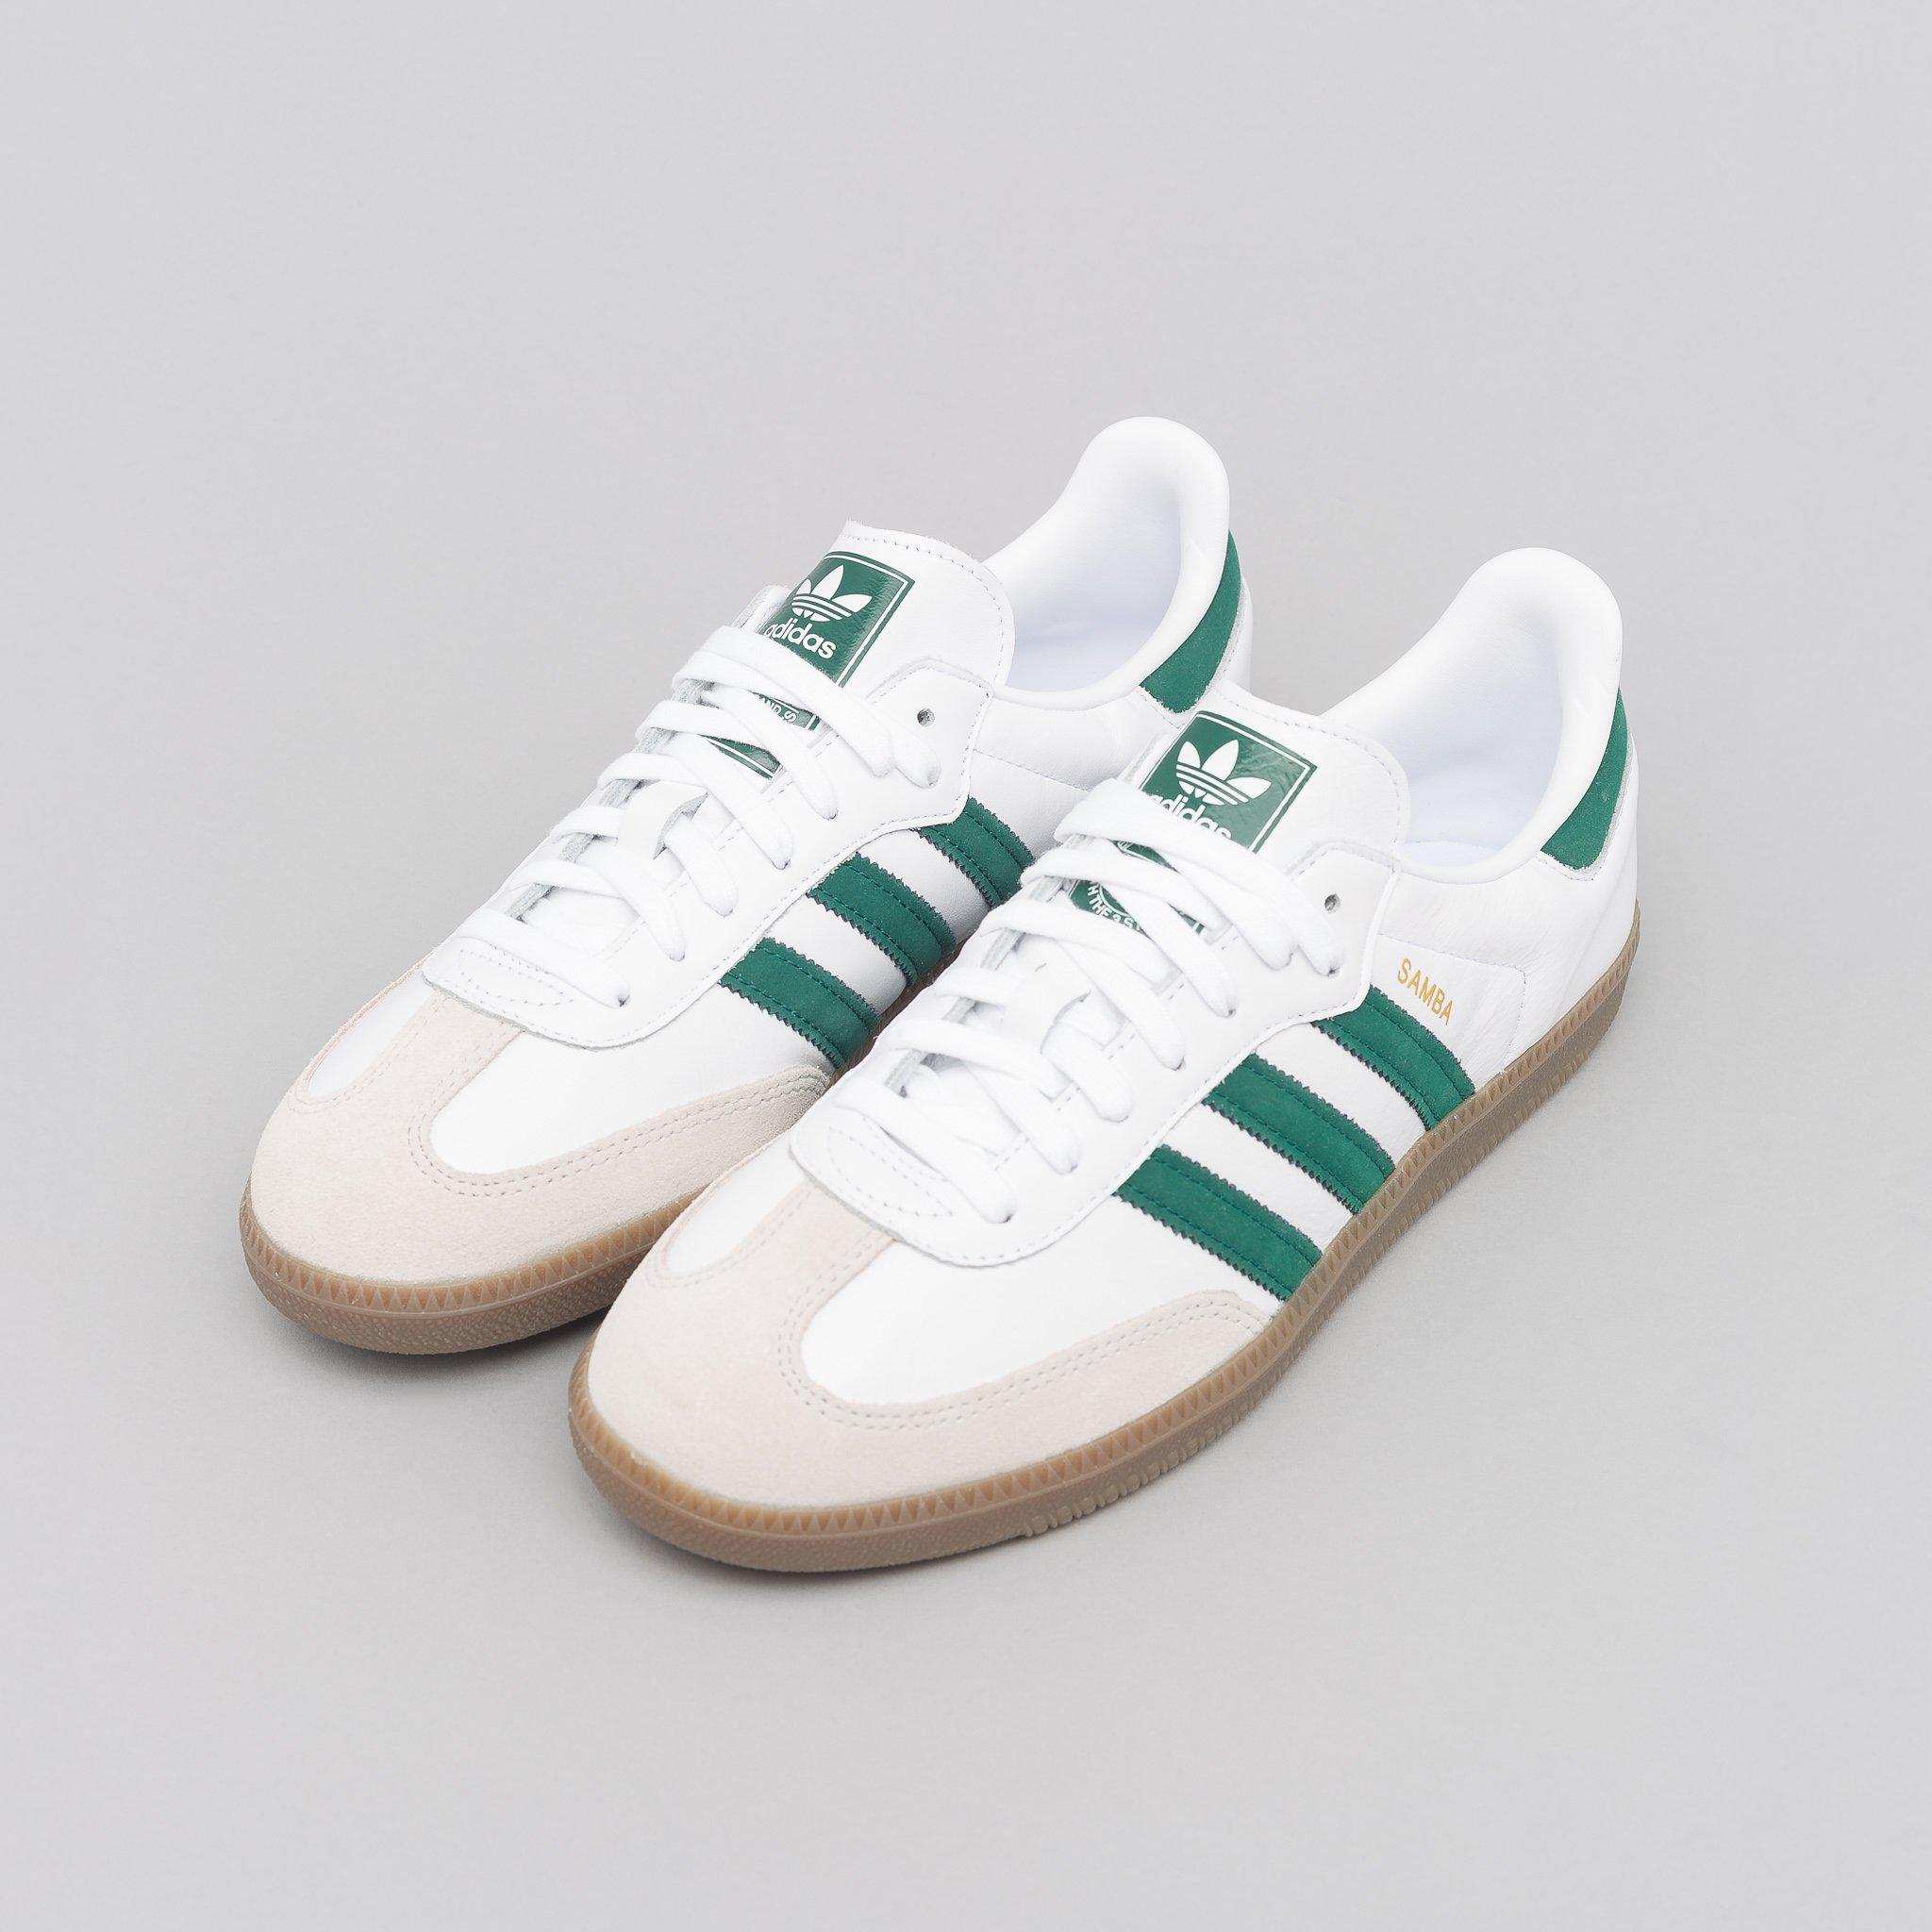 adidas Leather Samba Og In White/green for Men - Lyst